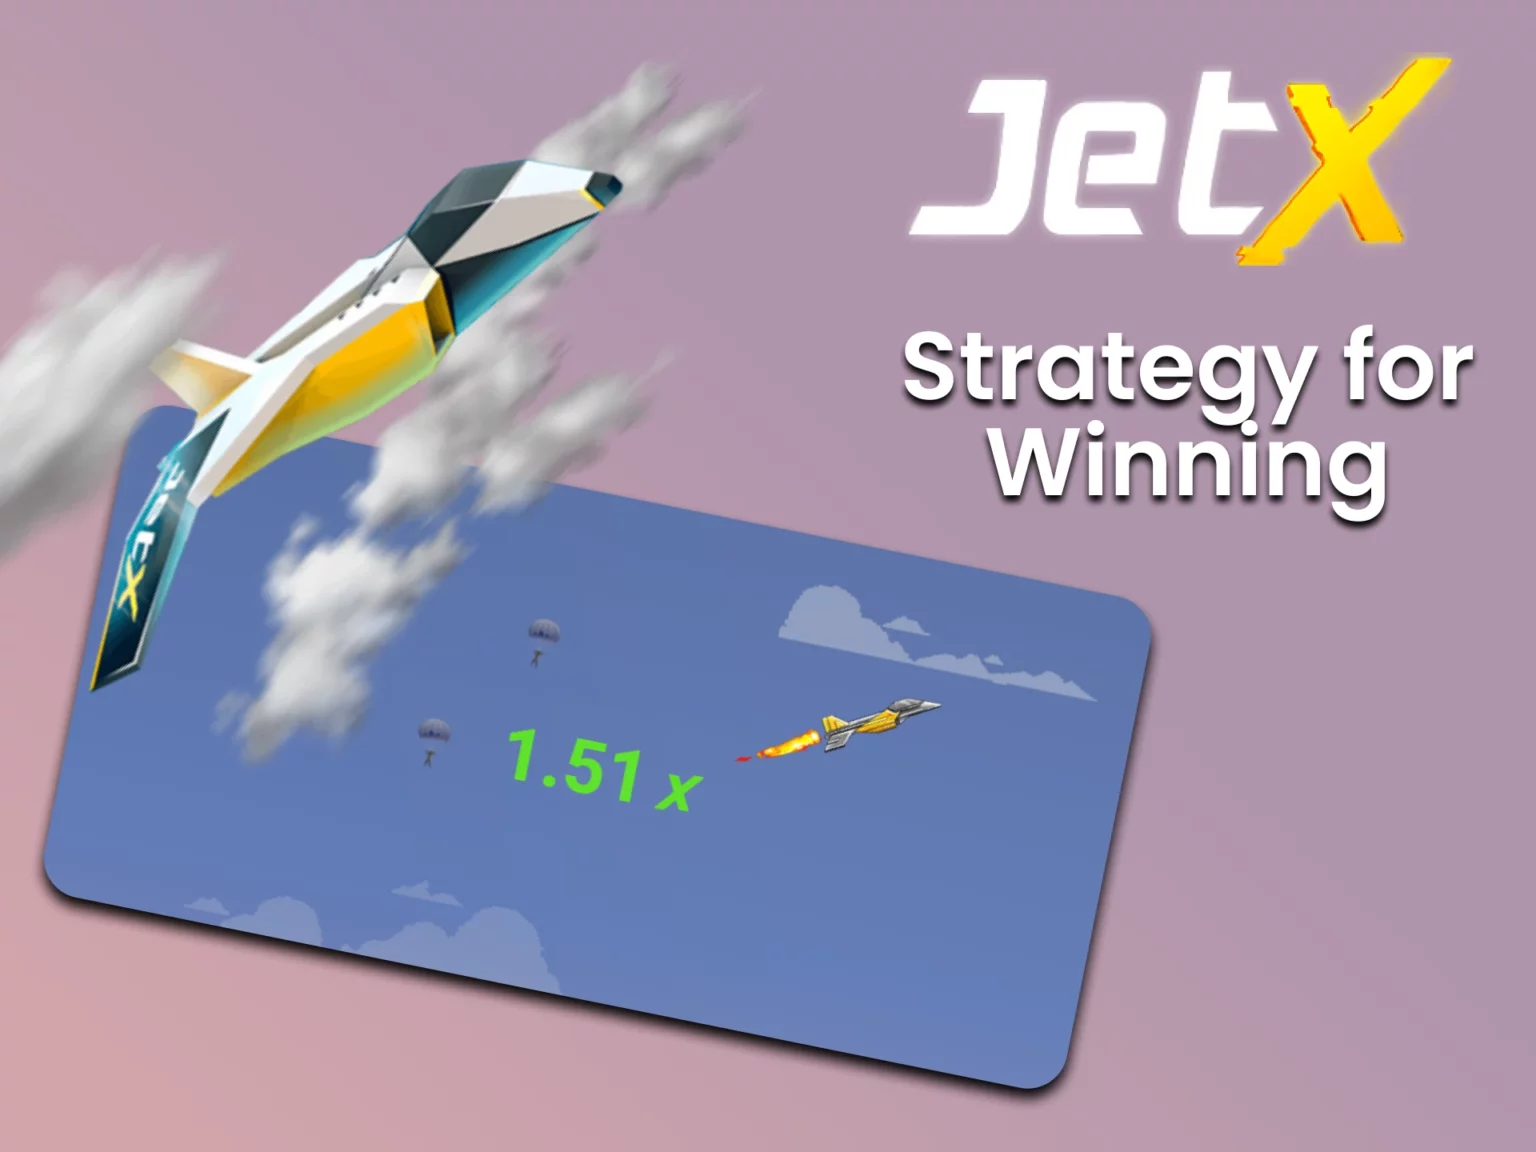 Jet X Strategy